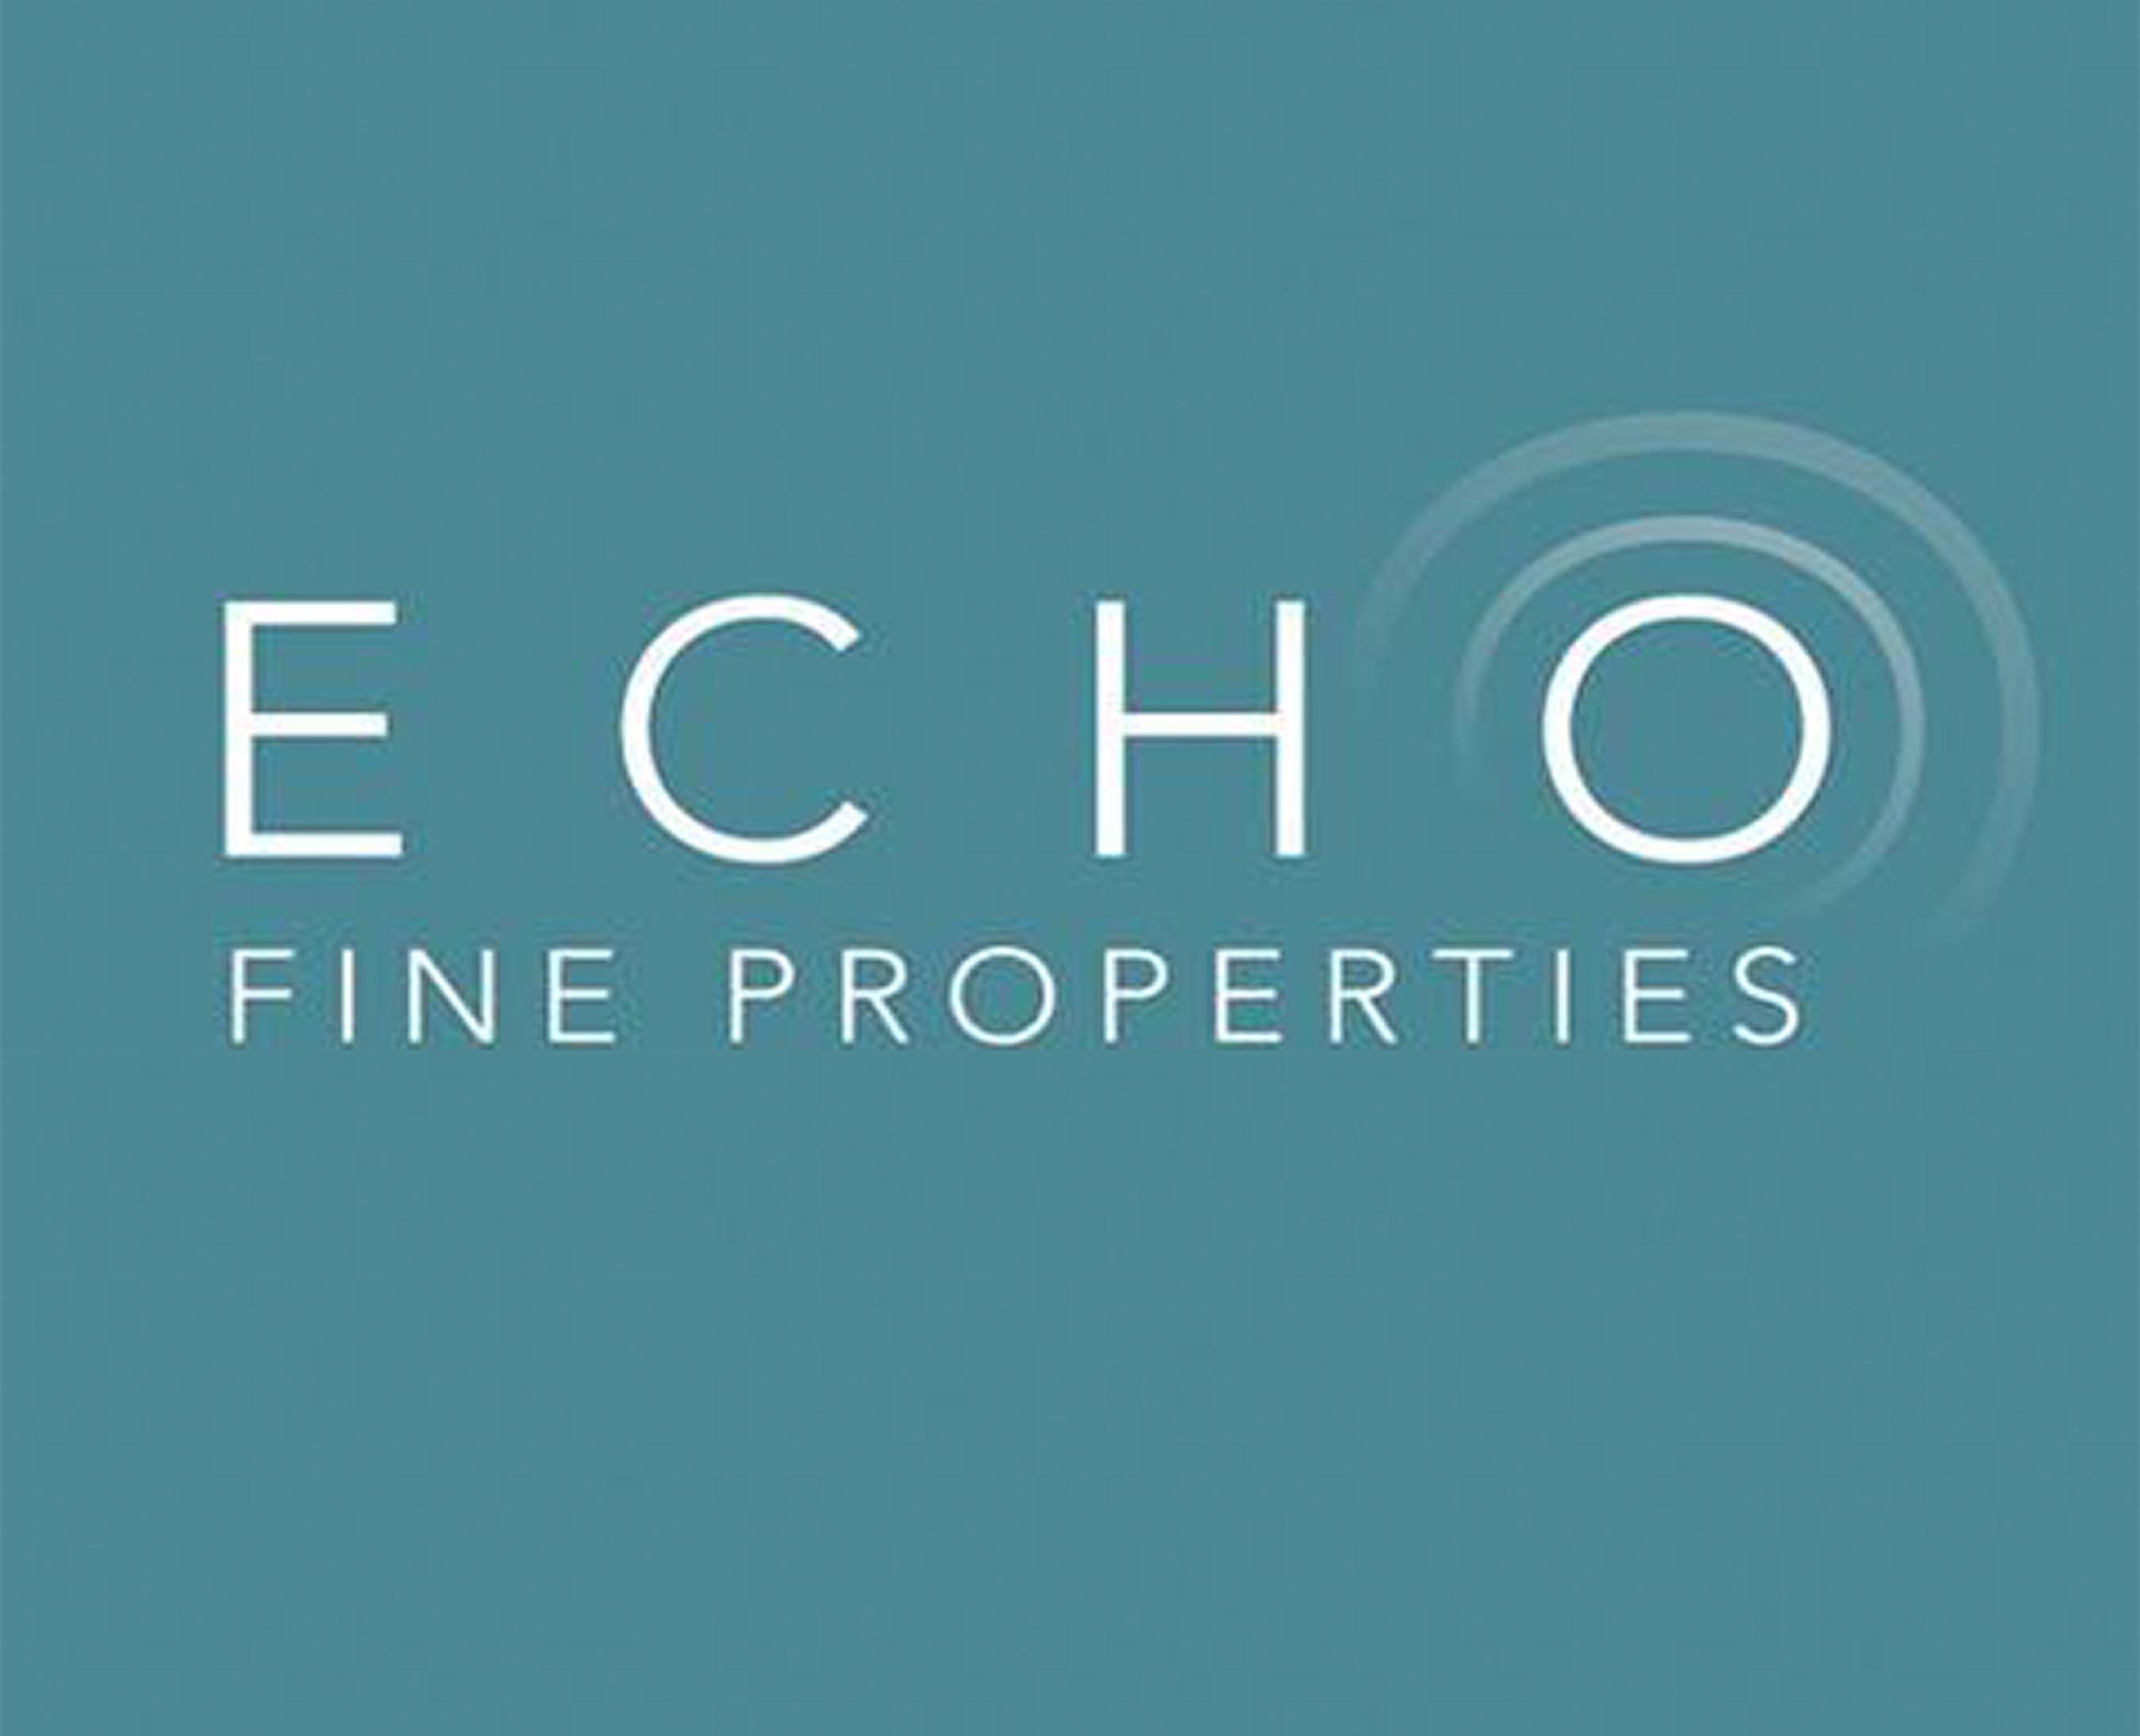 Echo Fine Properties Showcase: Nautical Ventures